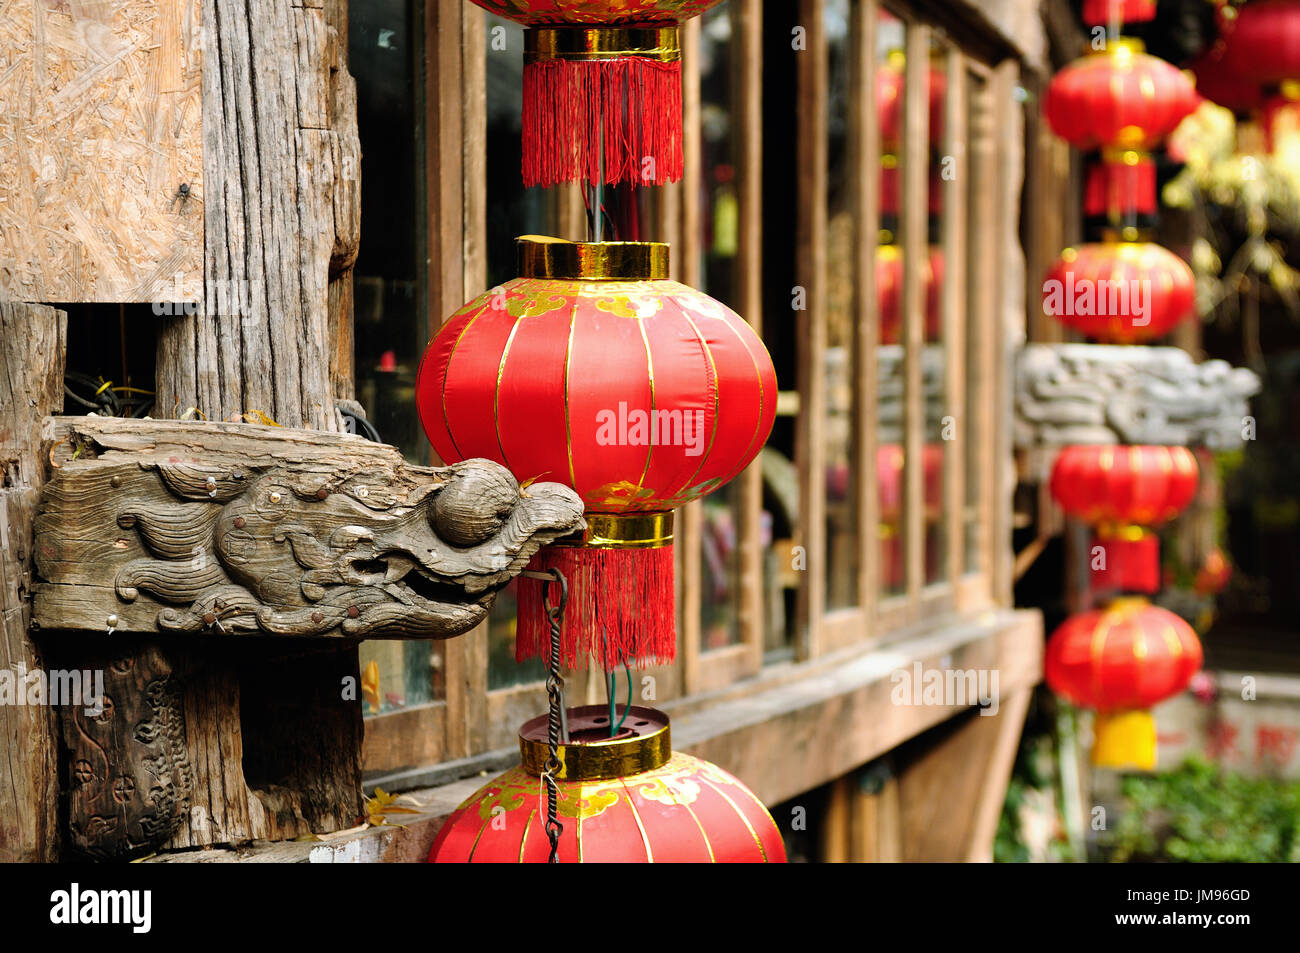 Vieille ville de Lijiang, l'architecture en bois détails, la Chine. La province du Yunnan. Lijiang est célèbre pour son site du patrimoine de l'UNESCO, la vieille ville de Lijiang dans la foule Banque D'Images